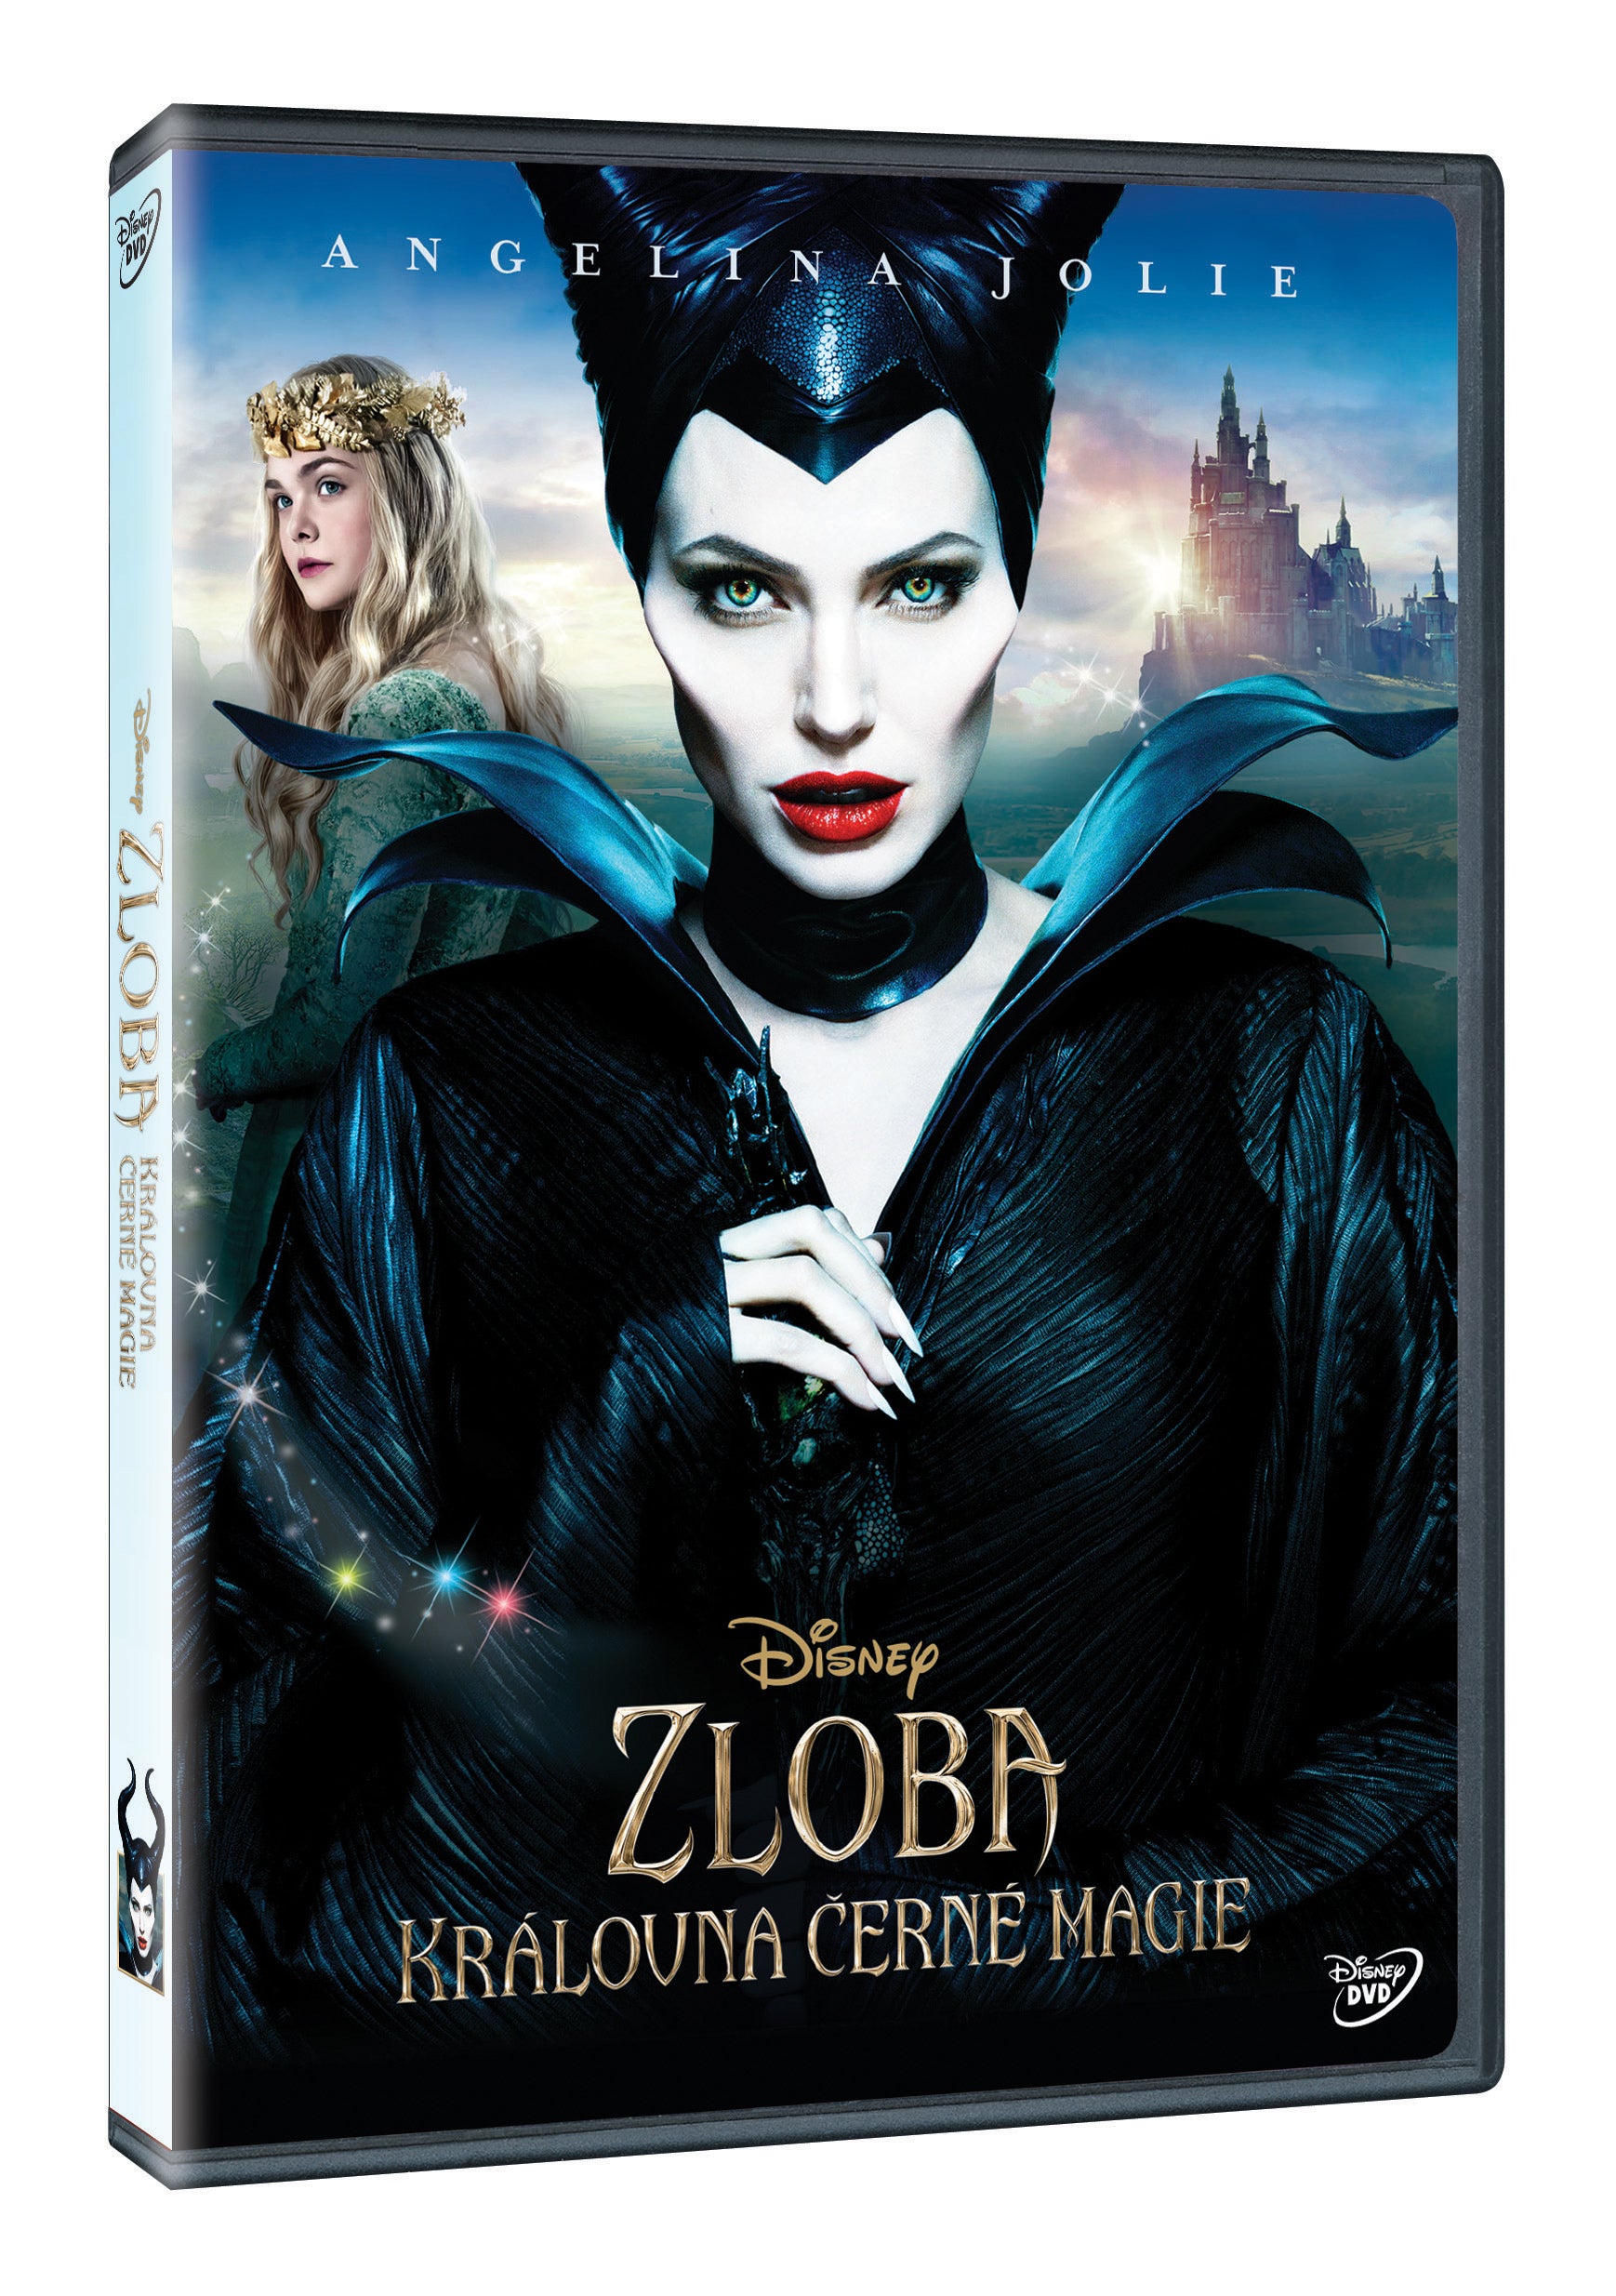 Zloba – Kralovna cerne magie DVD / Maleficent